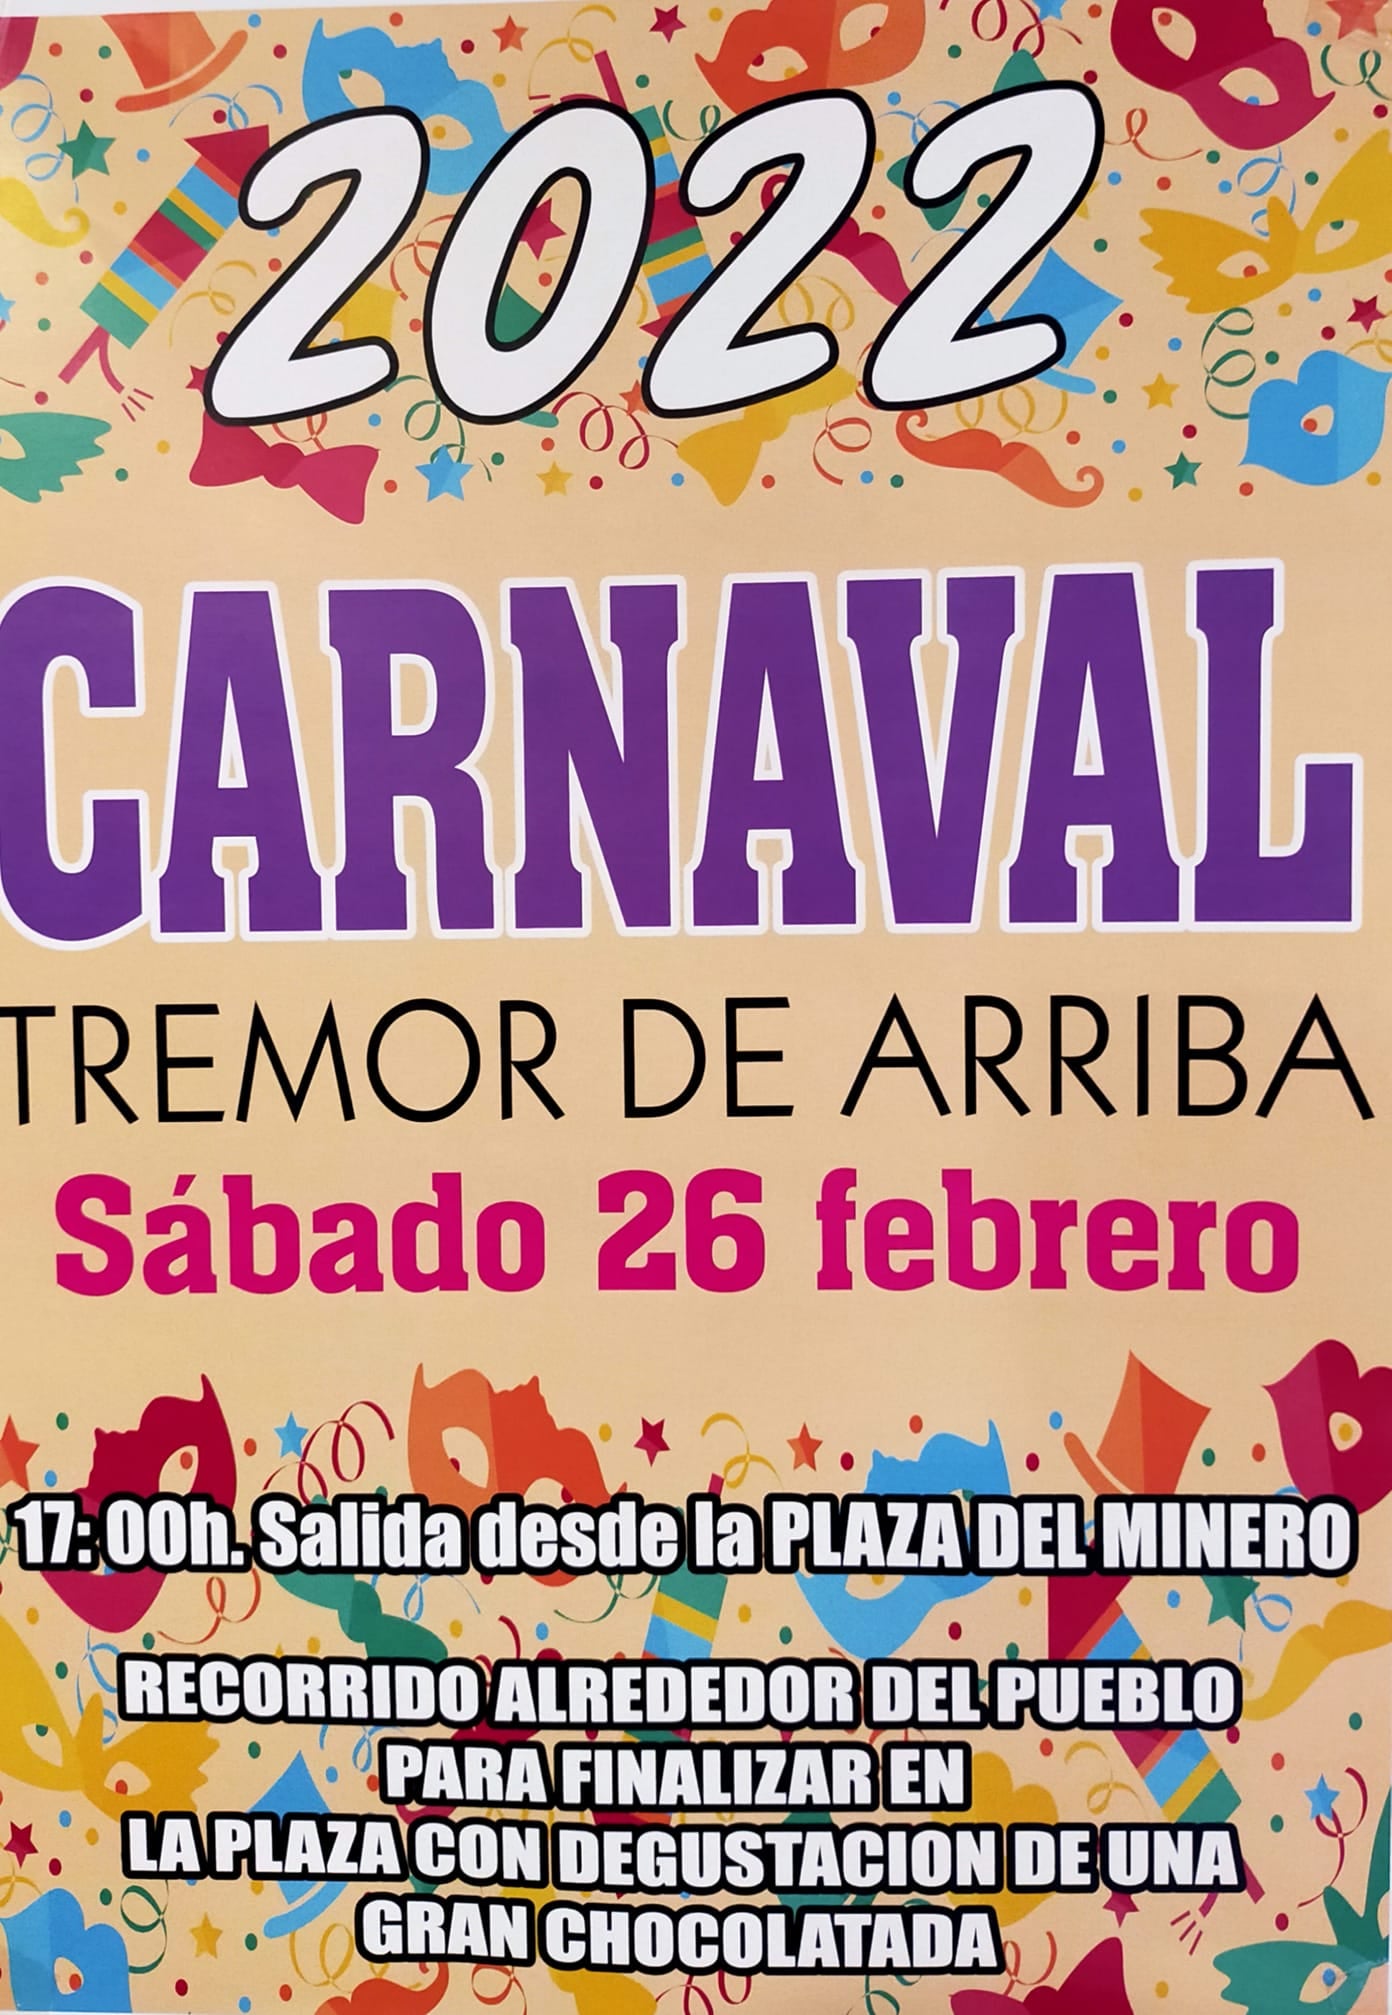 Carnaval en el Bierzo. Todas las fechas y horarios para que no te pierdas nada 28